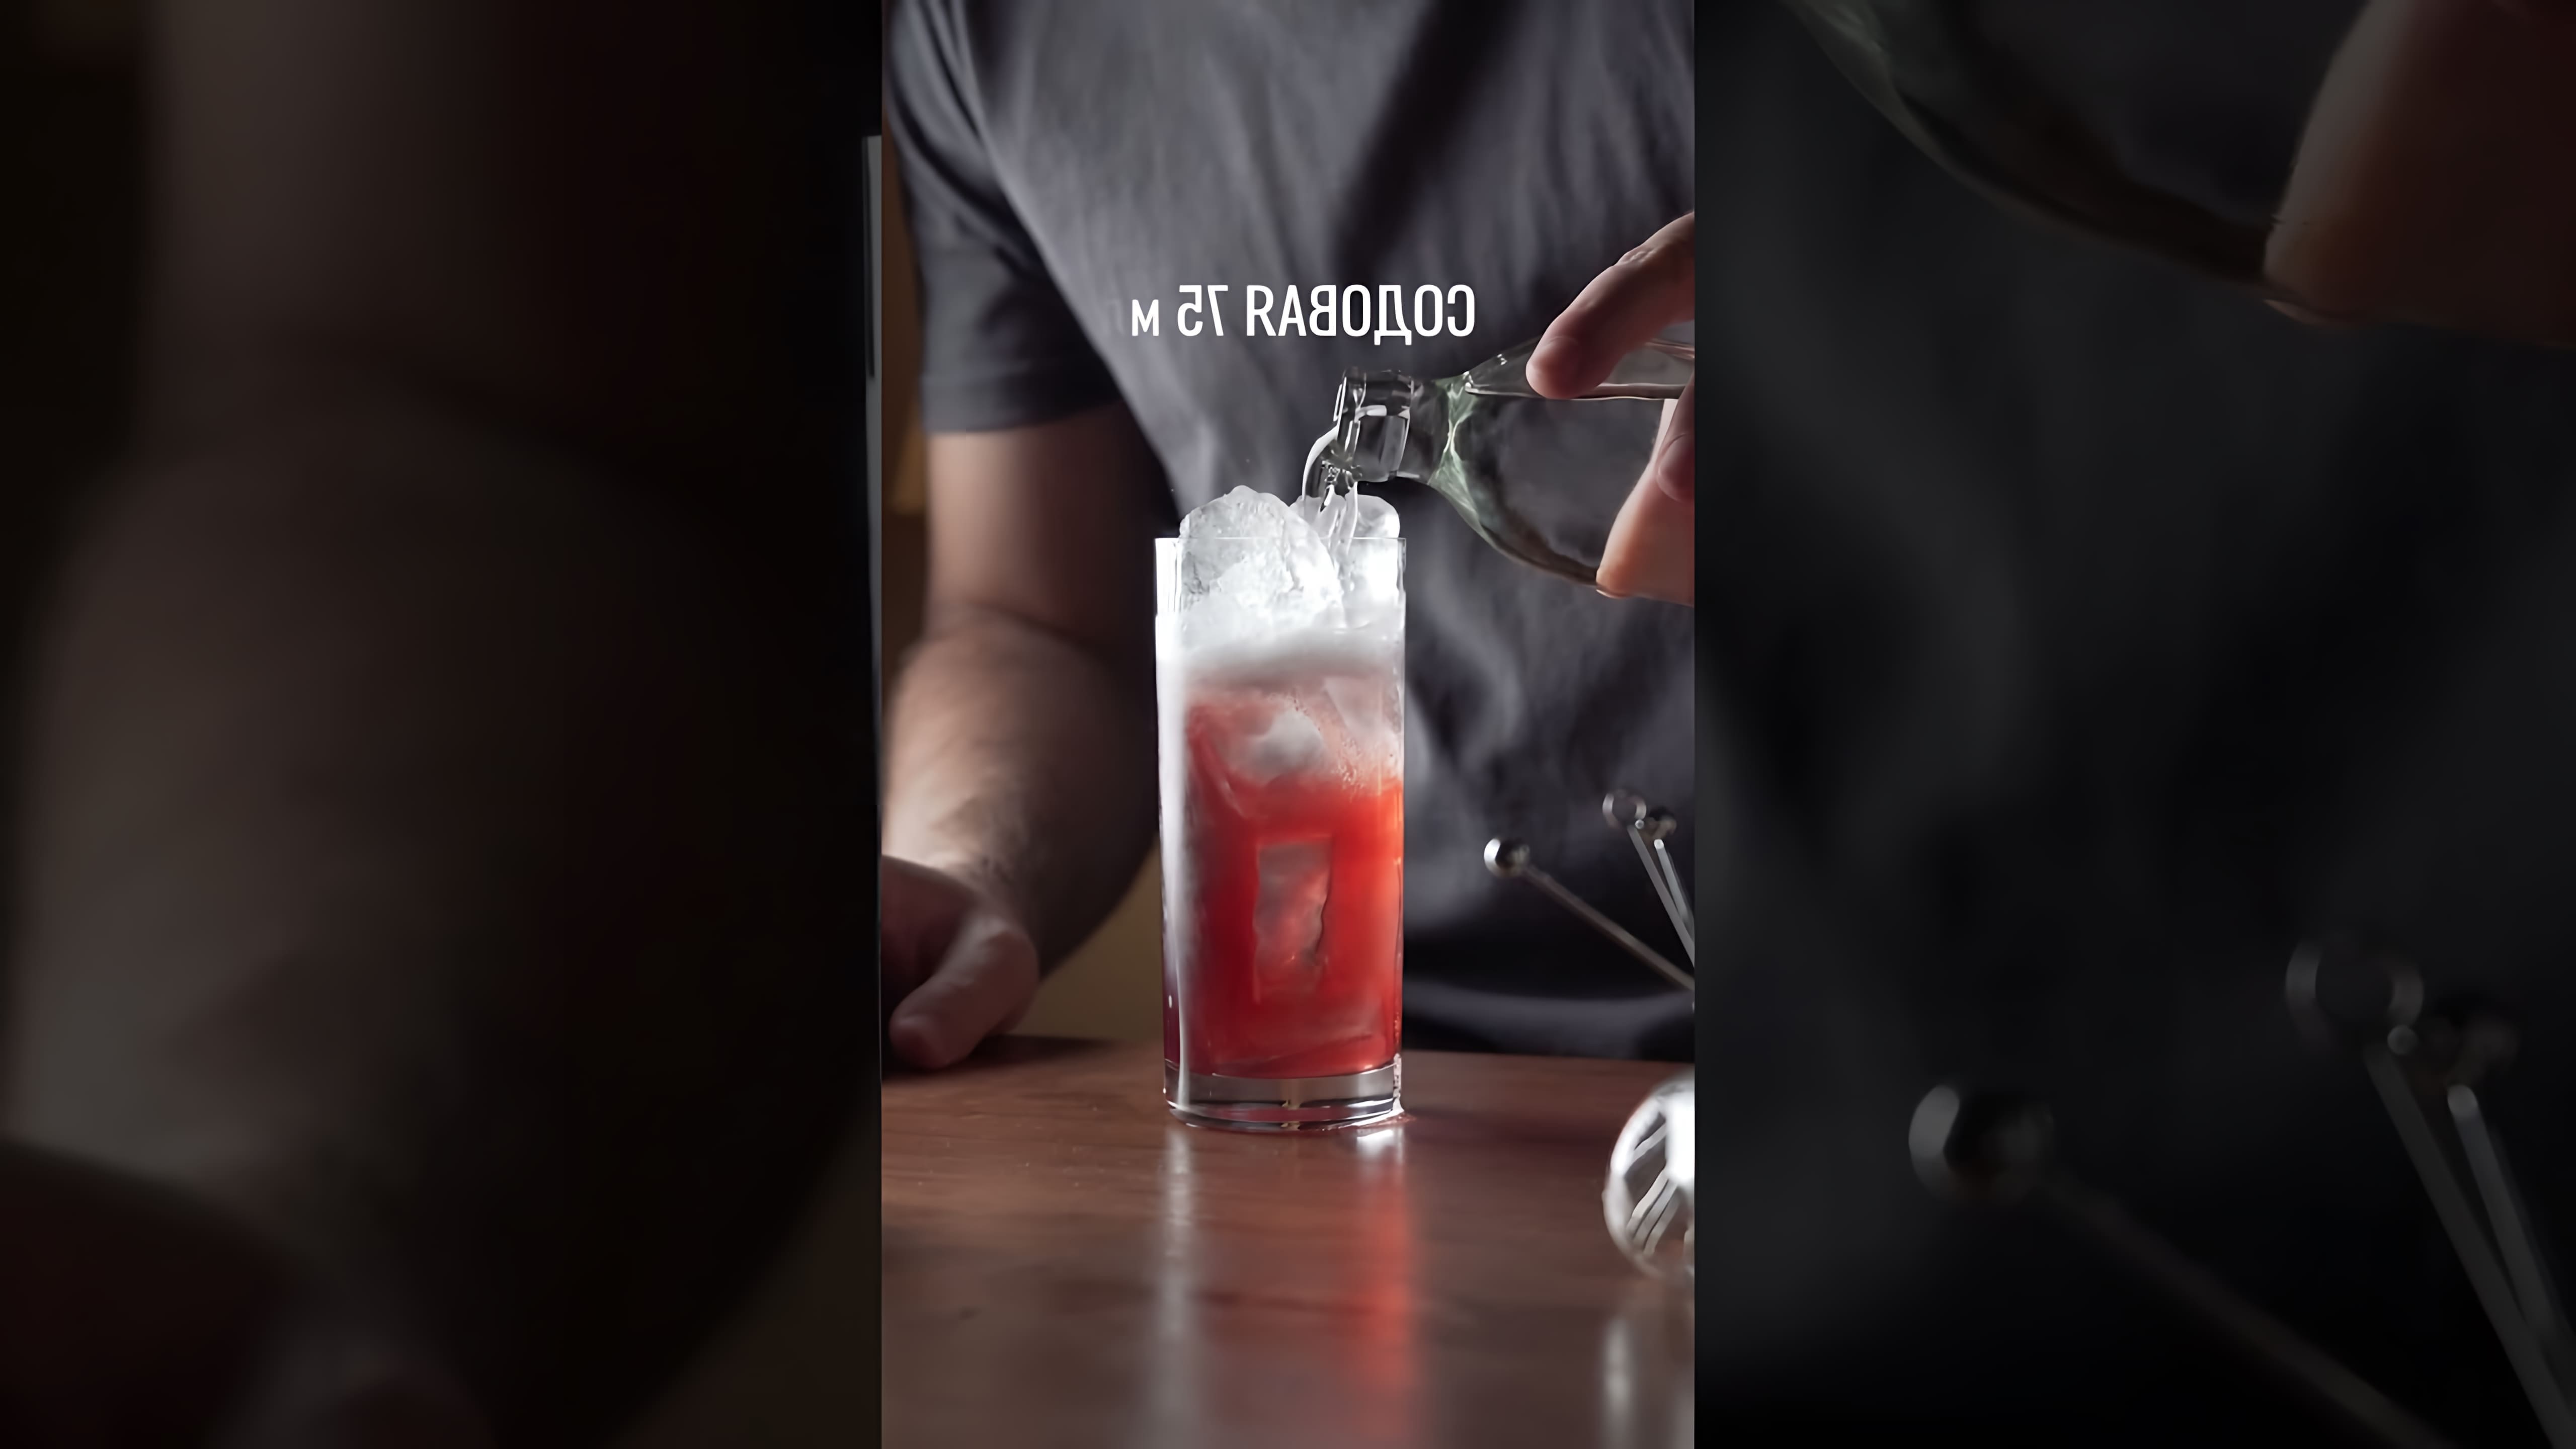 "Смородиновый коктейль на джине" - это видео-ролик, который предлагает рецепт вкусного и освежающего напитка